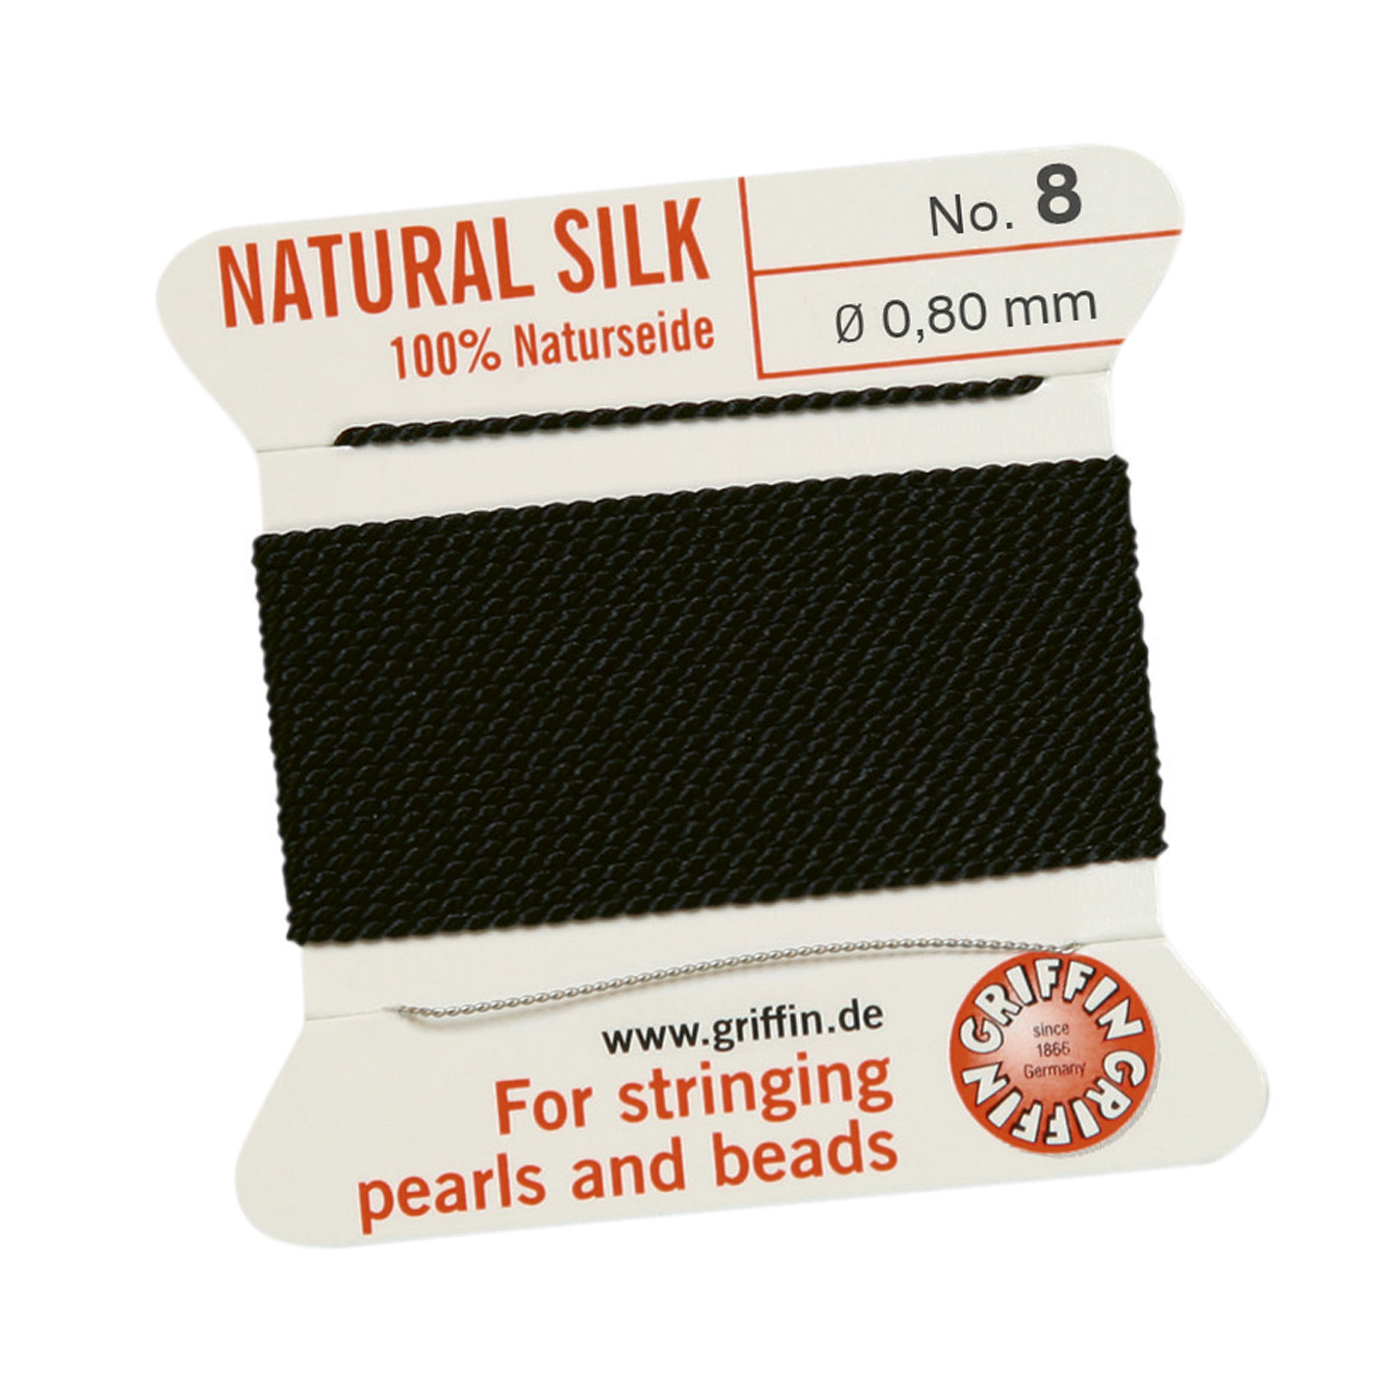 Bead Cord 100% Natural Silk, Black, No. 8 - 2 m